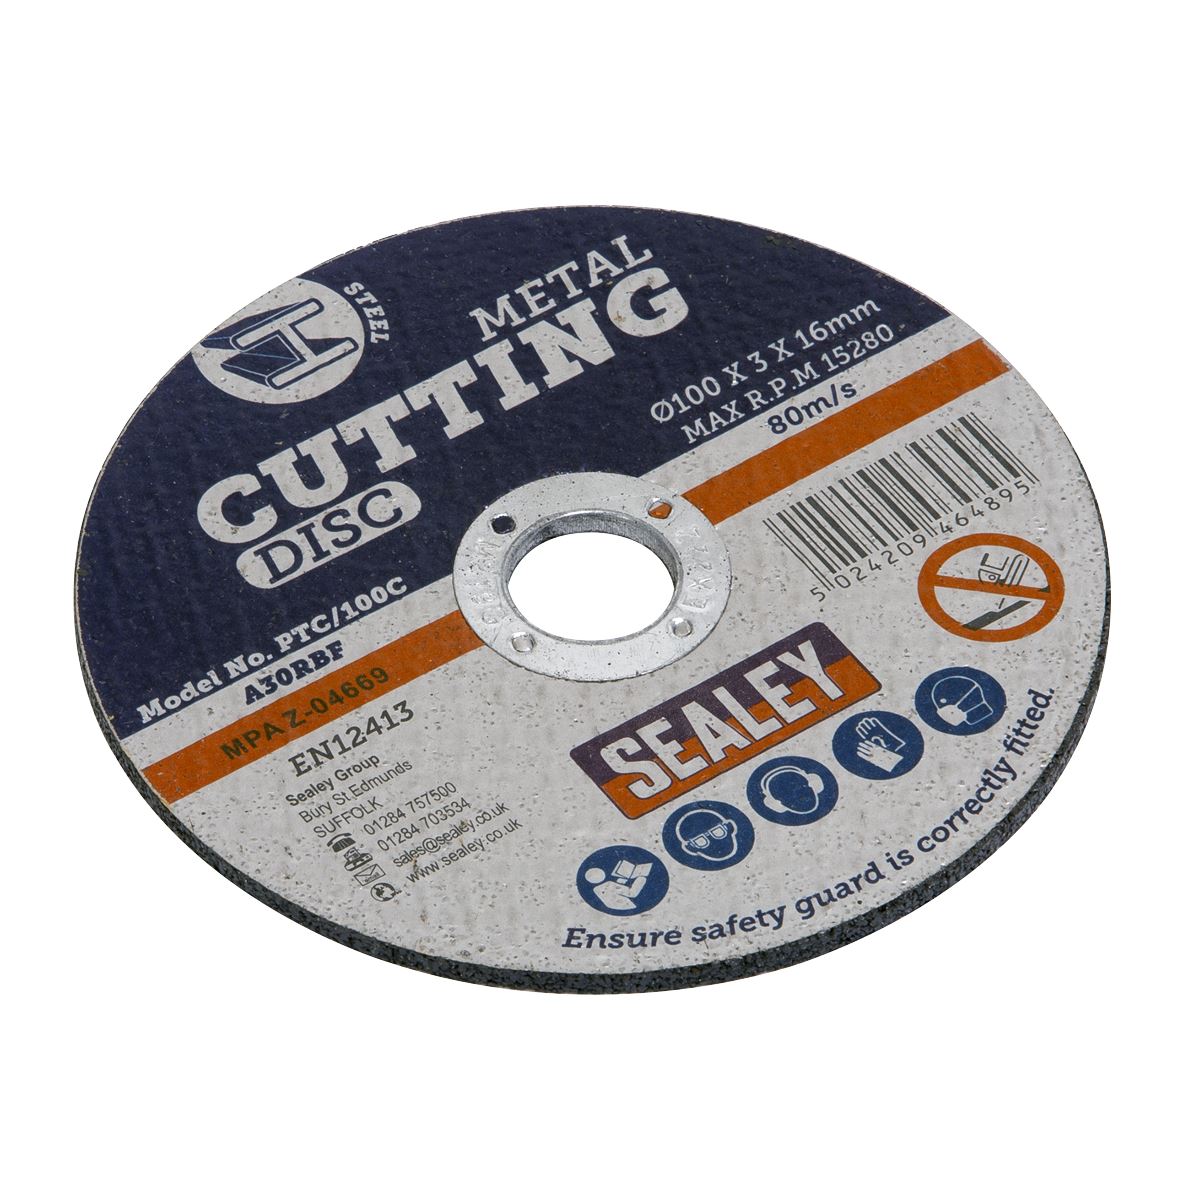 Sealey Cutting Disc Ø100 x 3mm Ø16mm Bore